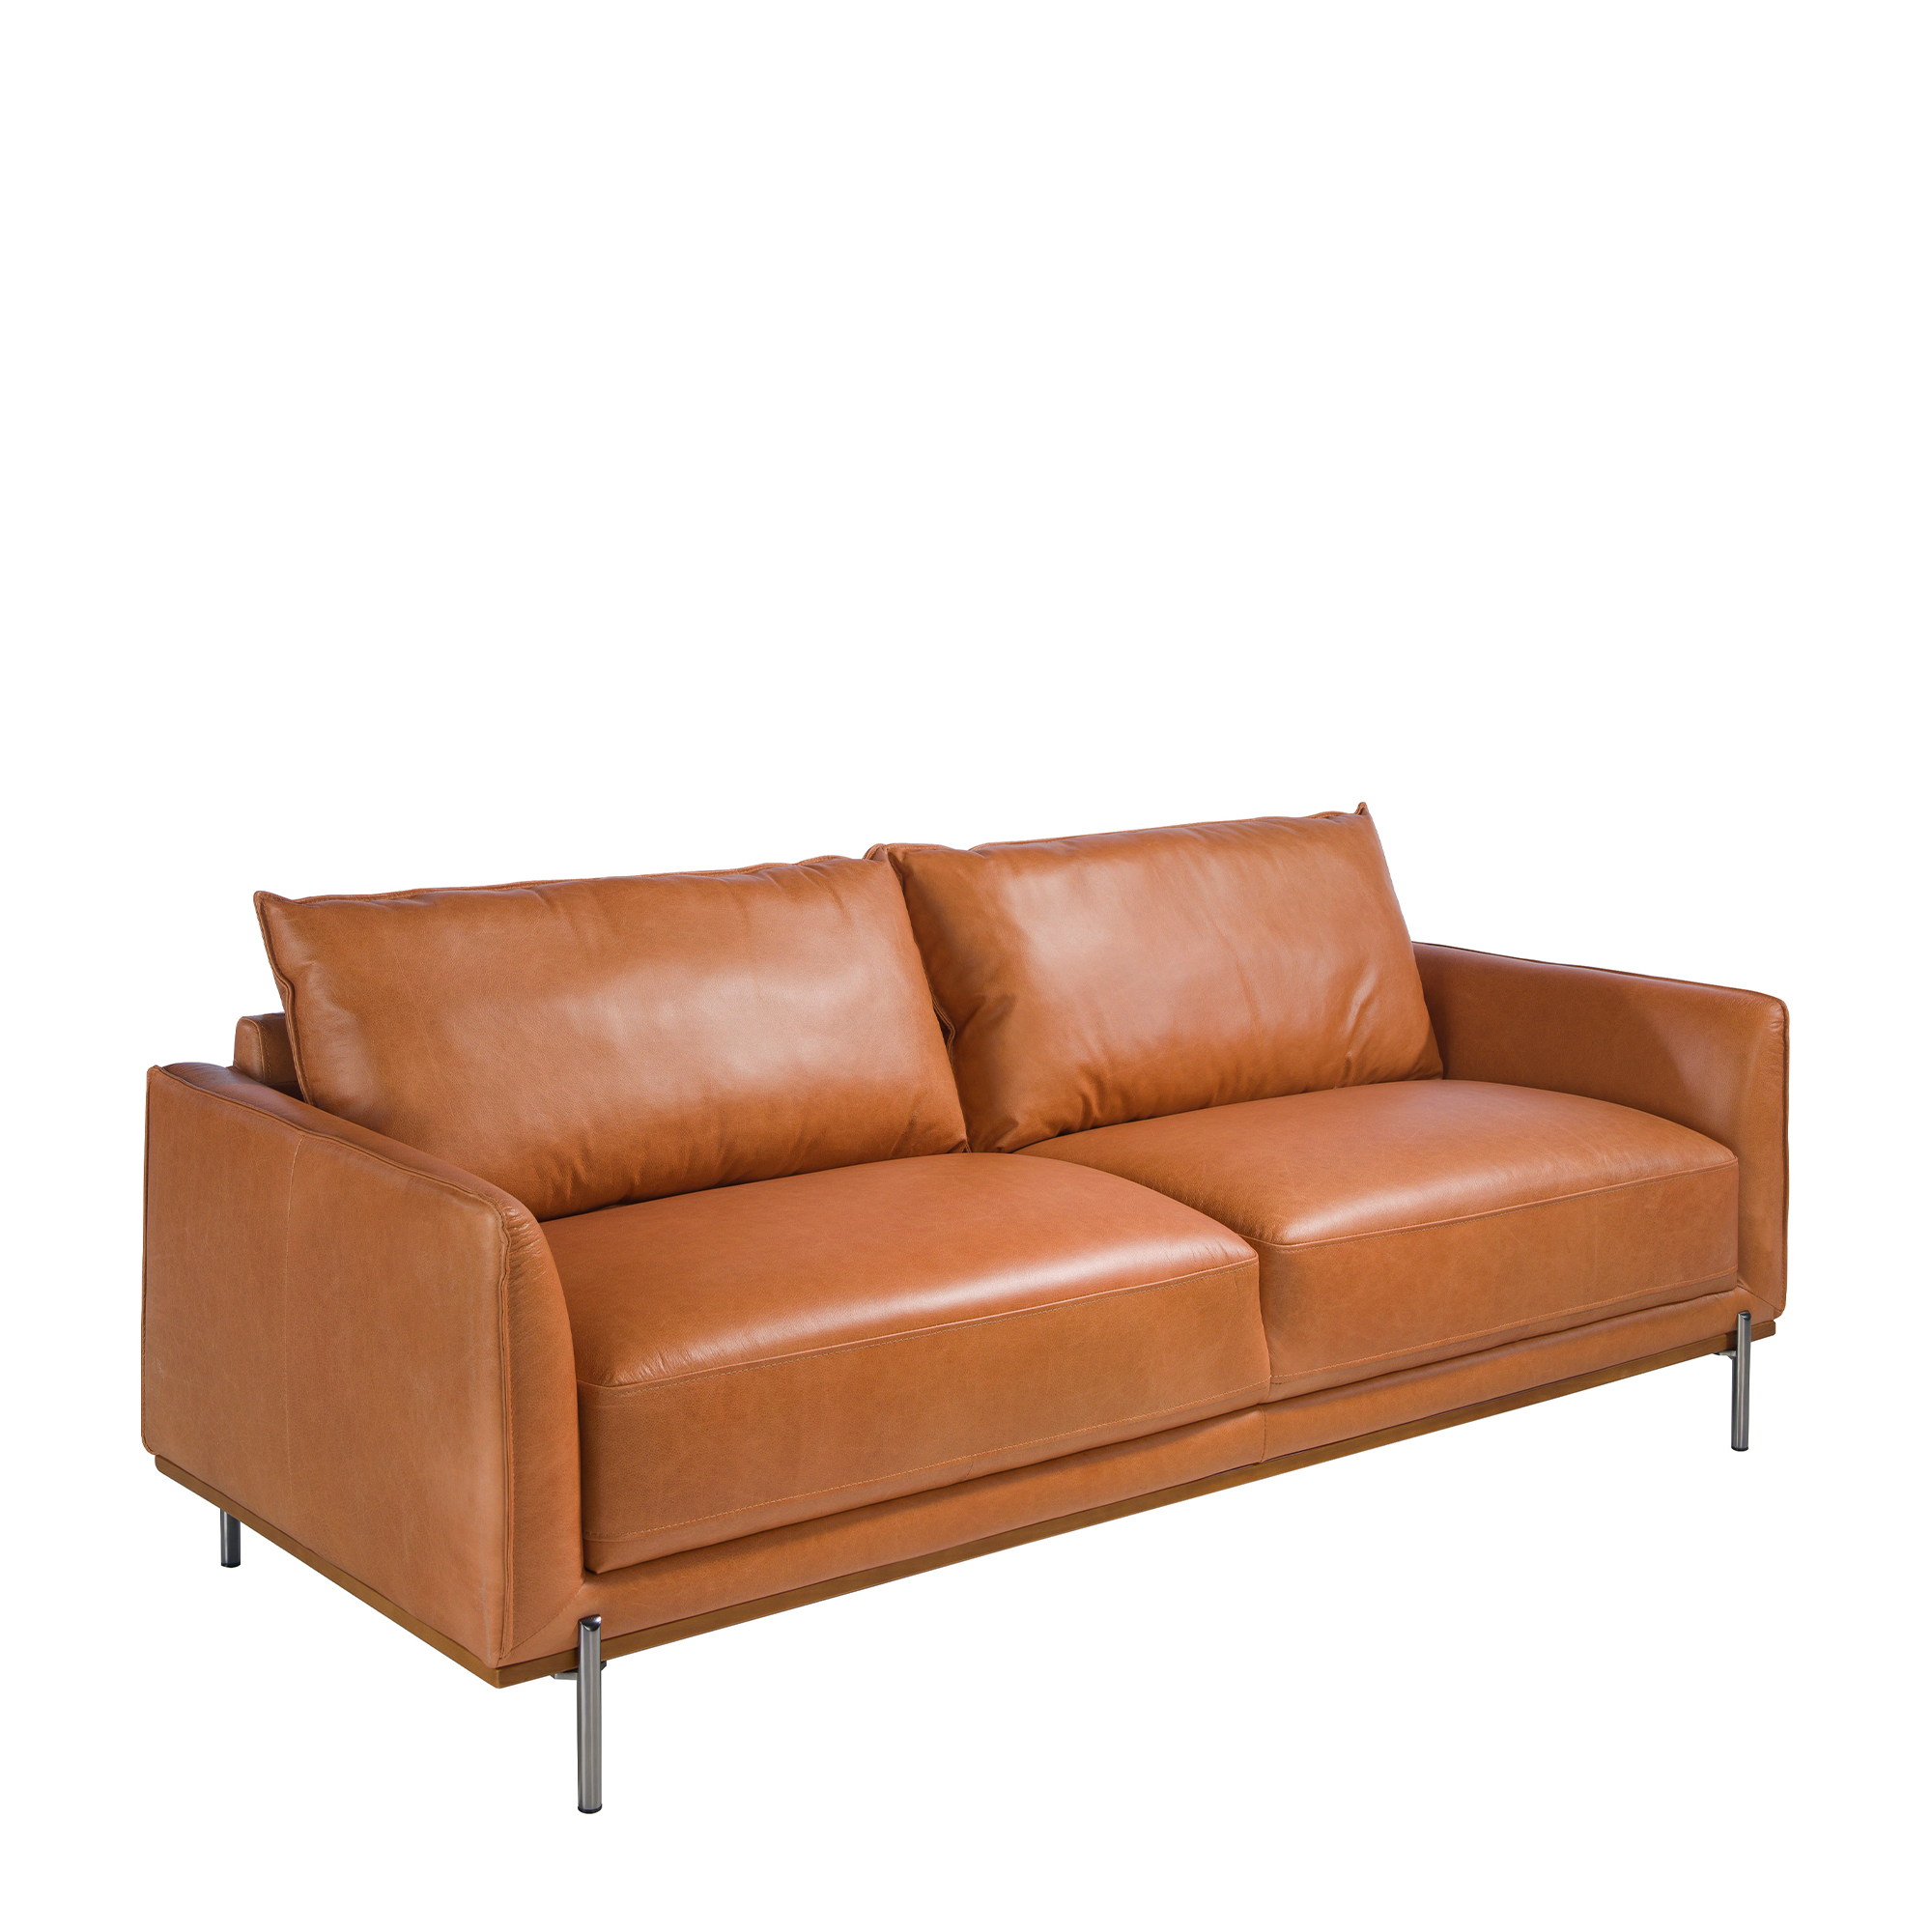 3-Sitzer-Sofa mit Polsterung aus büffelbraunem Rindsleder und Gestell aus gedämpftem Buchenholz. Beinstruktur aus massivem, geschwärztem Stahl.